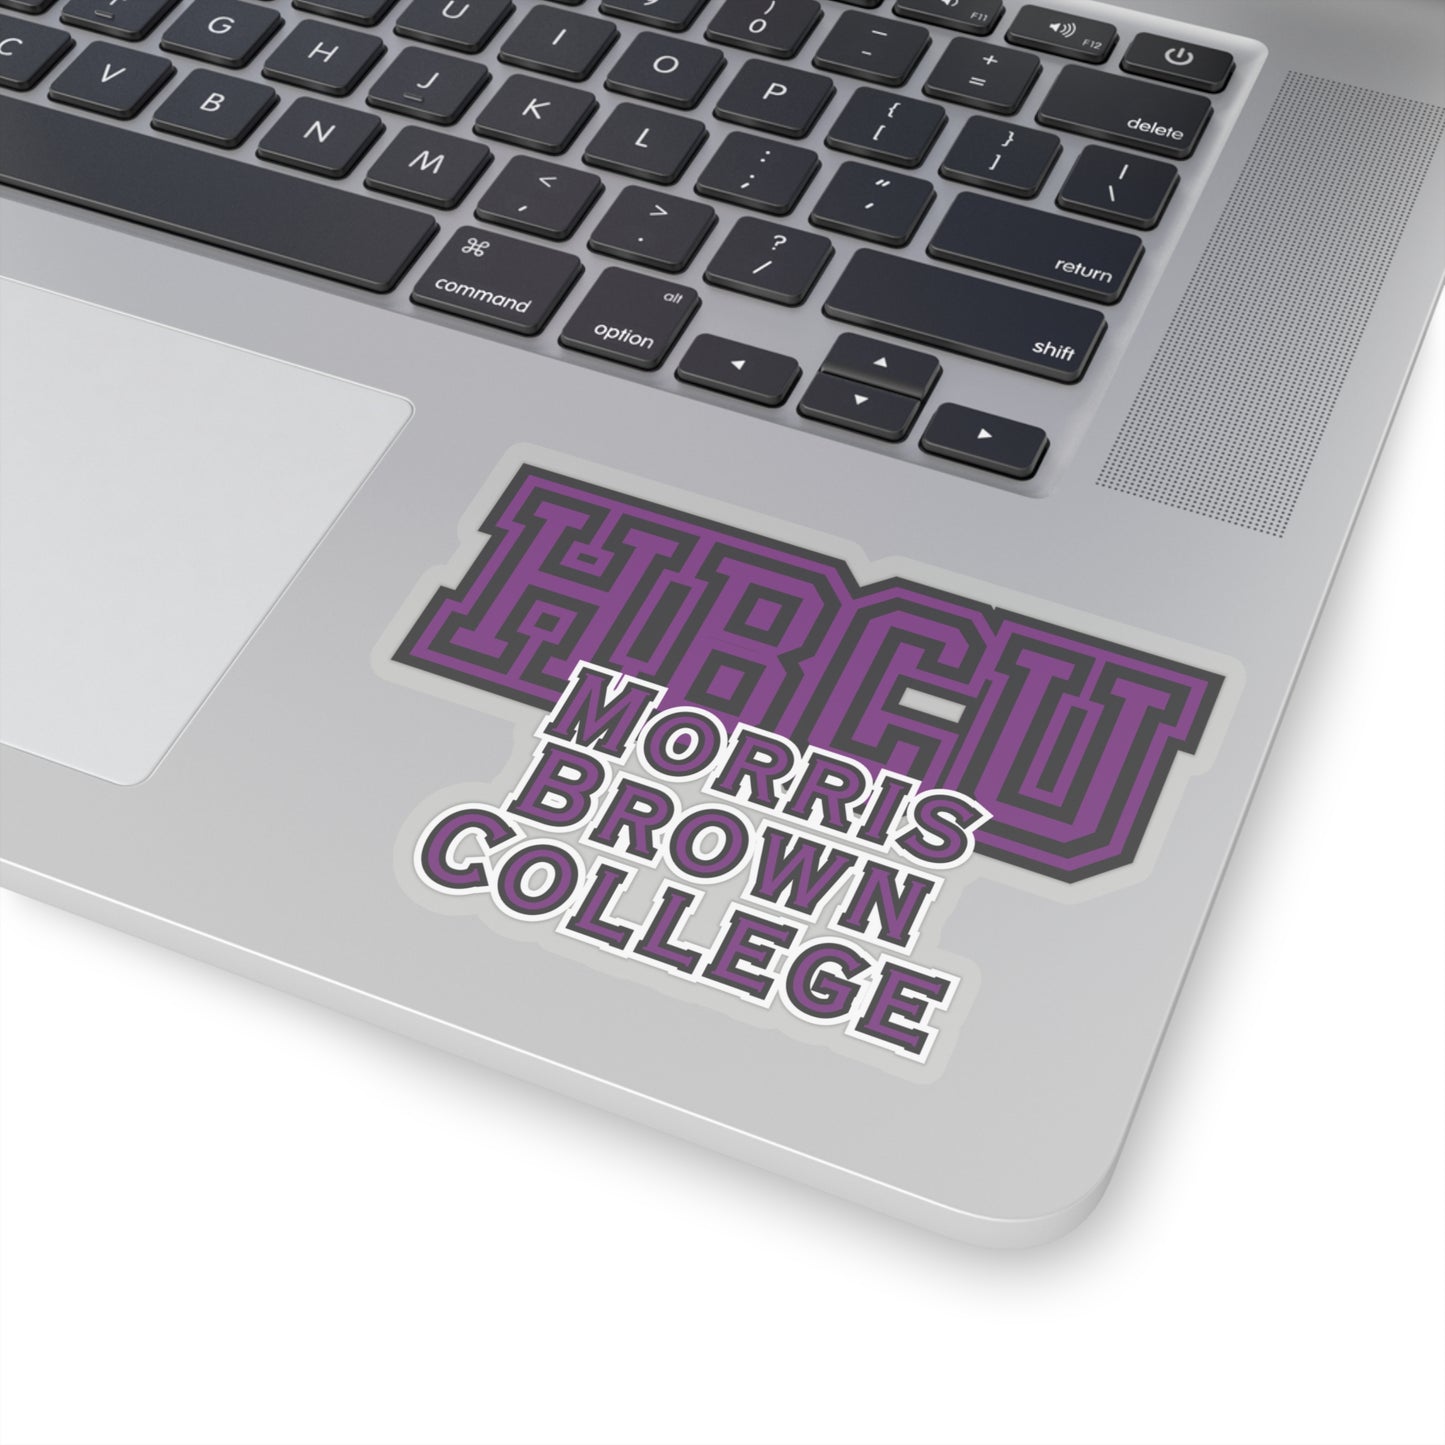 HBCU Morris Brown College Alumni Kiss-Cut Stickers